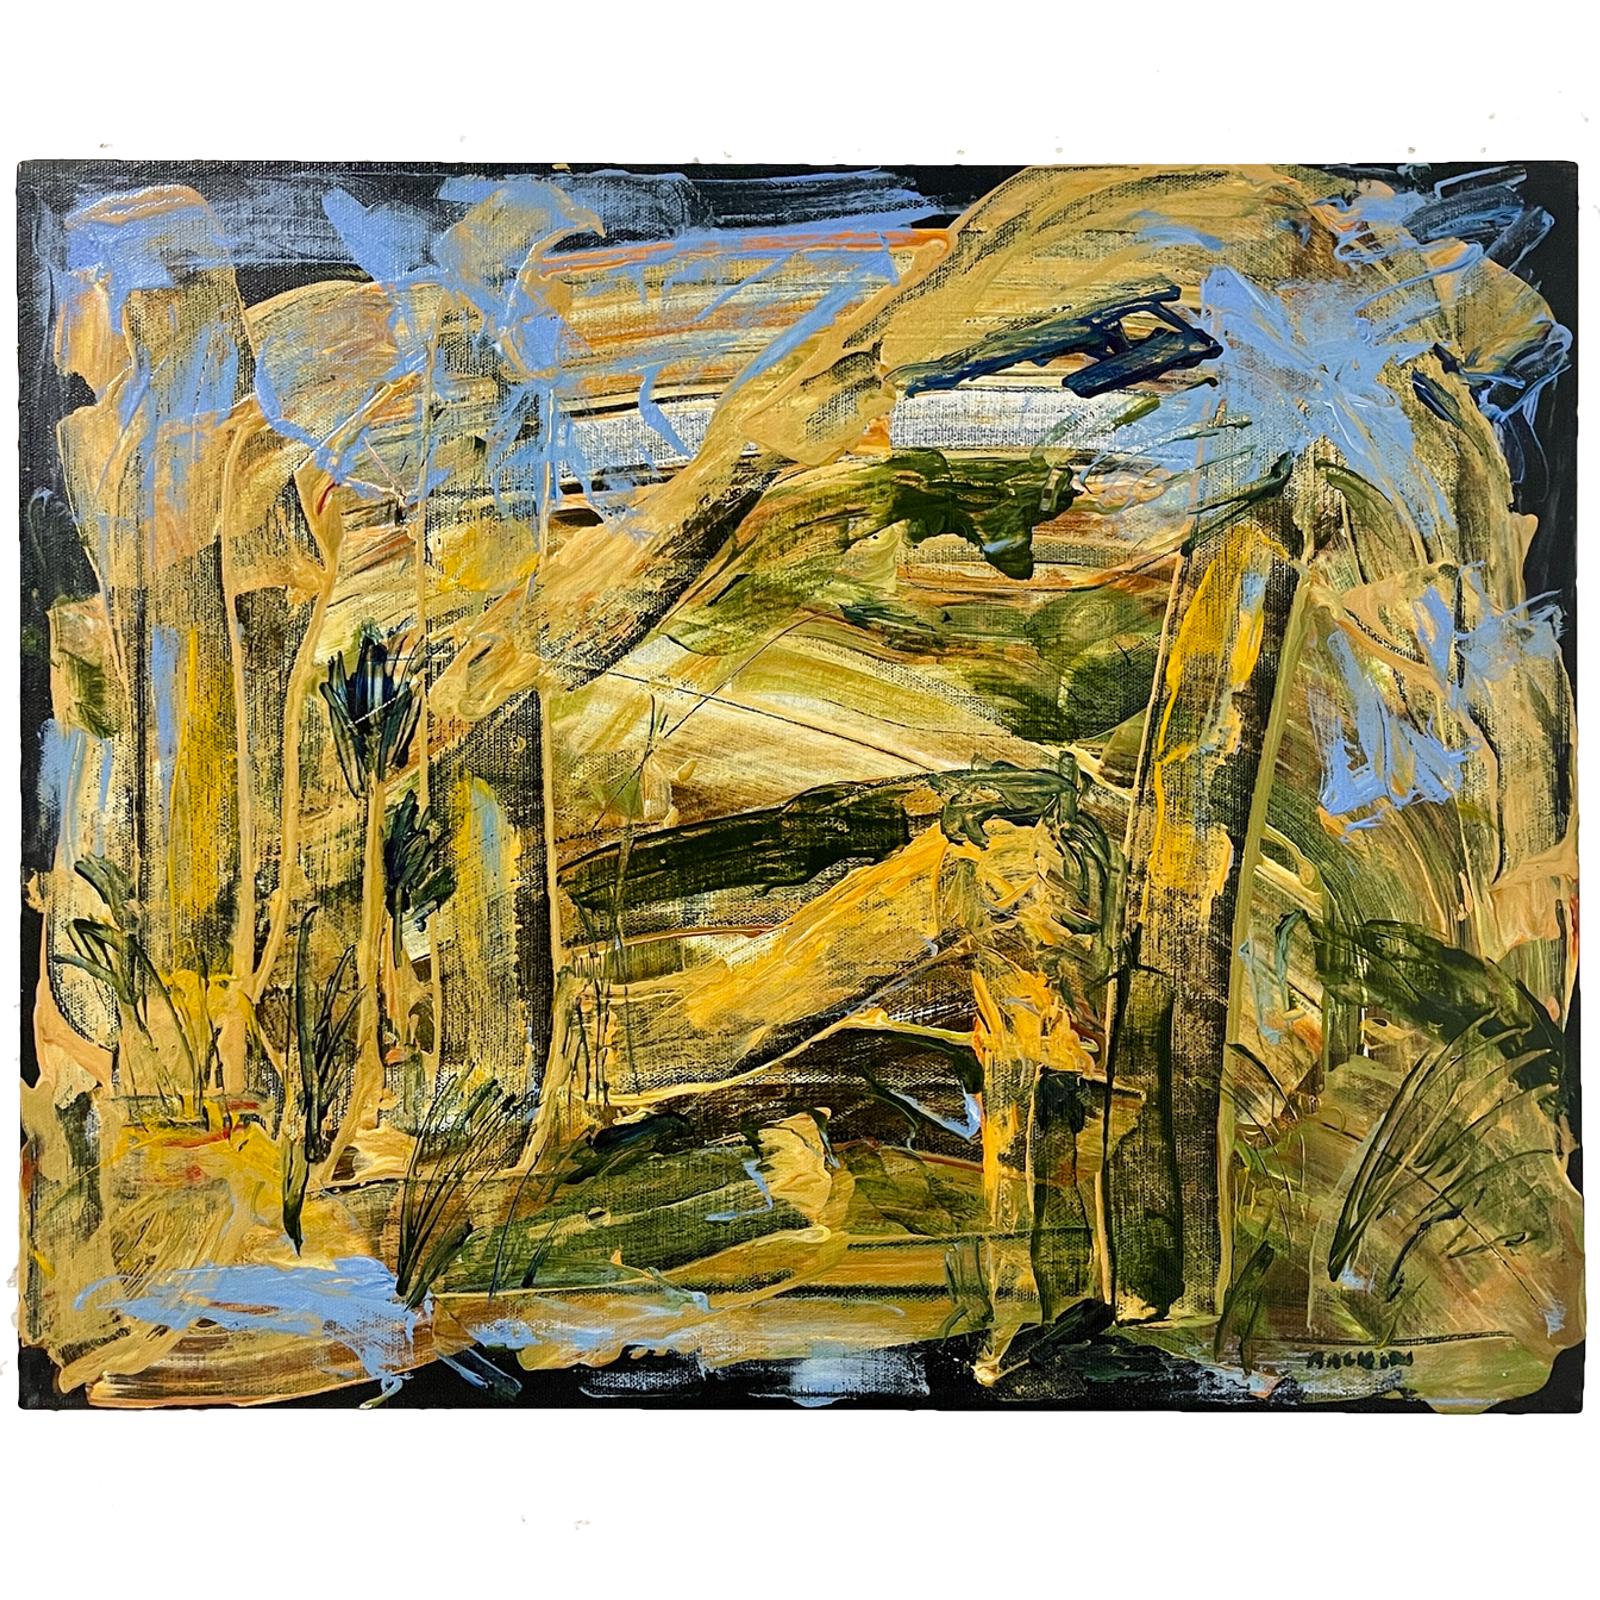 Steve Balkin (1938-2023)
Cette peinture a été achetée à la succession de Balkin. Elle provient de son domicile au nord de l'État de New York. Elle est intitulée "Rain Forest", datée de 8/2007 et signée au recto et au verso. Des acryliques vibrantes